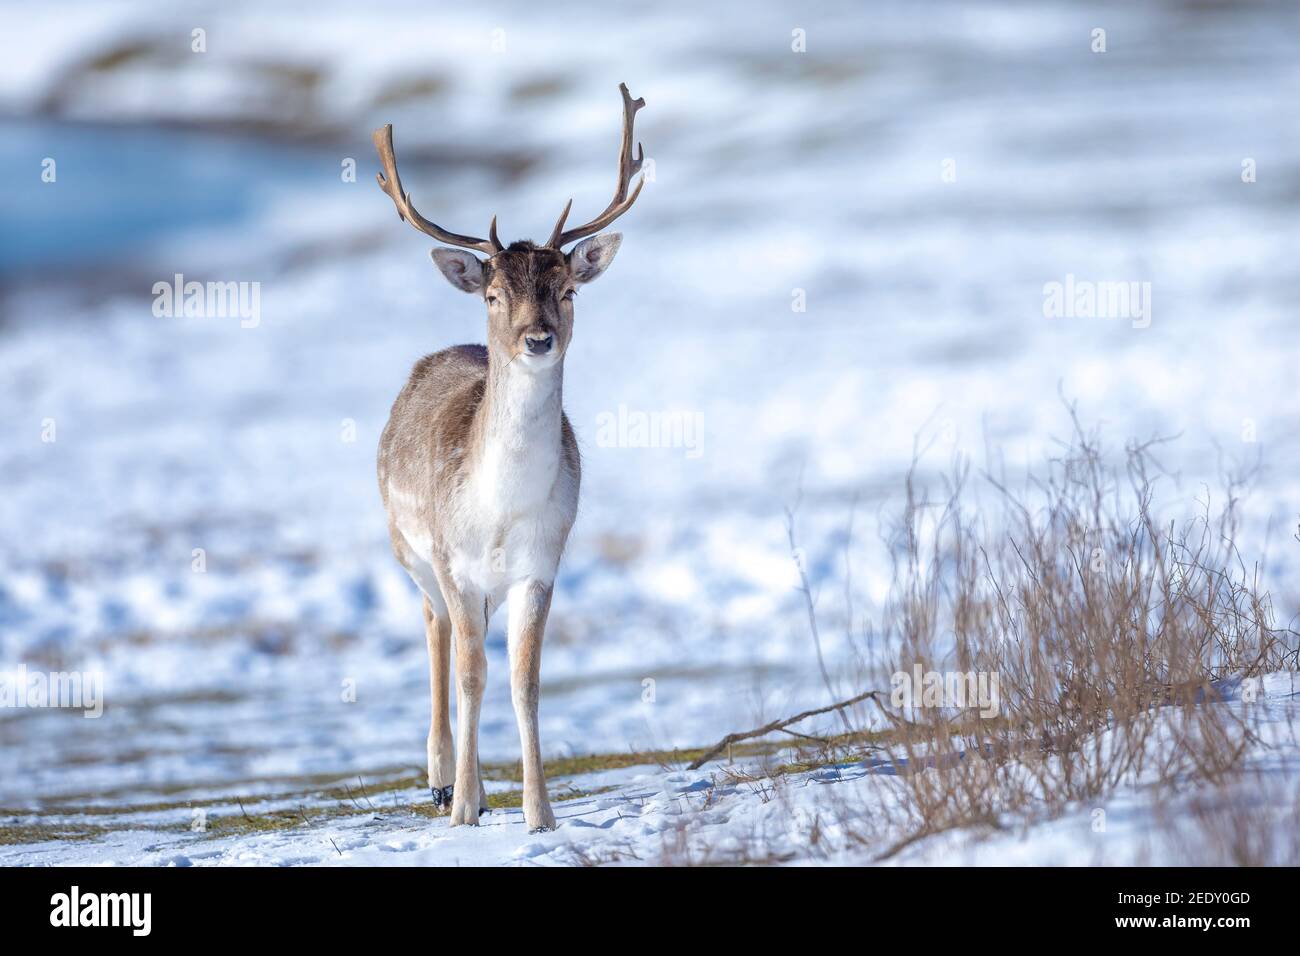 Damhirsch Dama Dama Futter im Winter Wald Schnee und Eis, selektive Fokus wird verwendet. Stockfoto